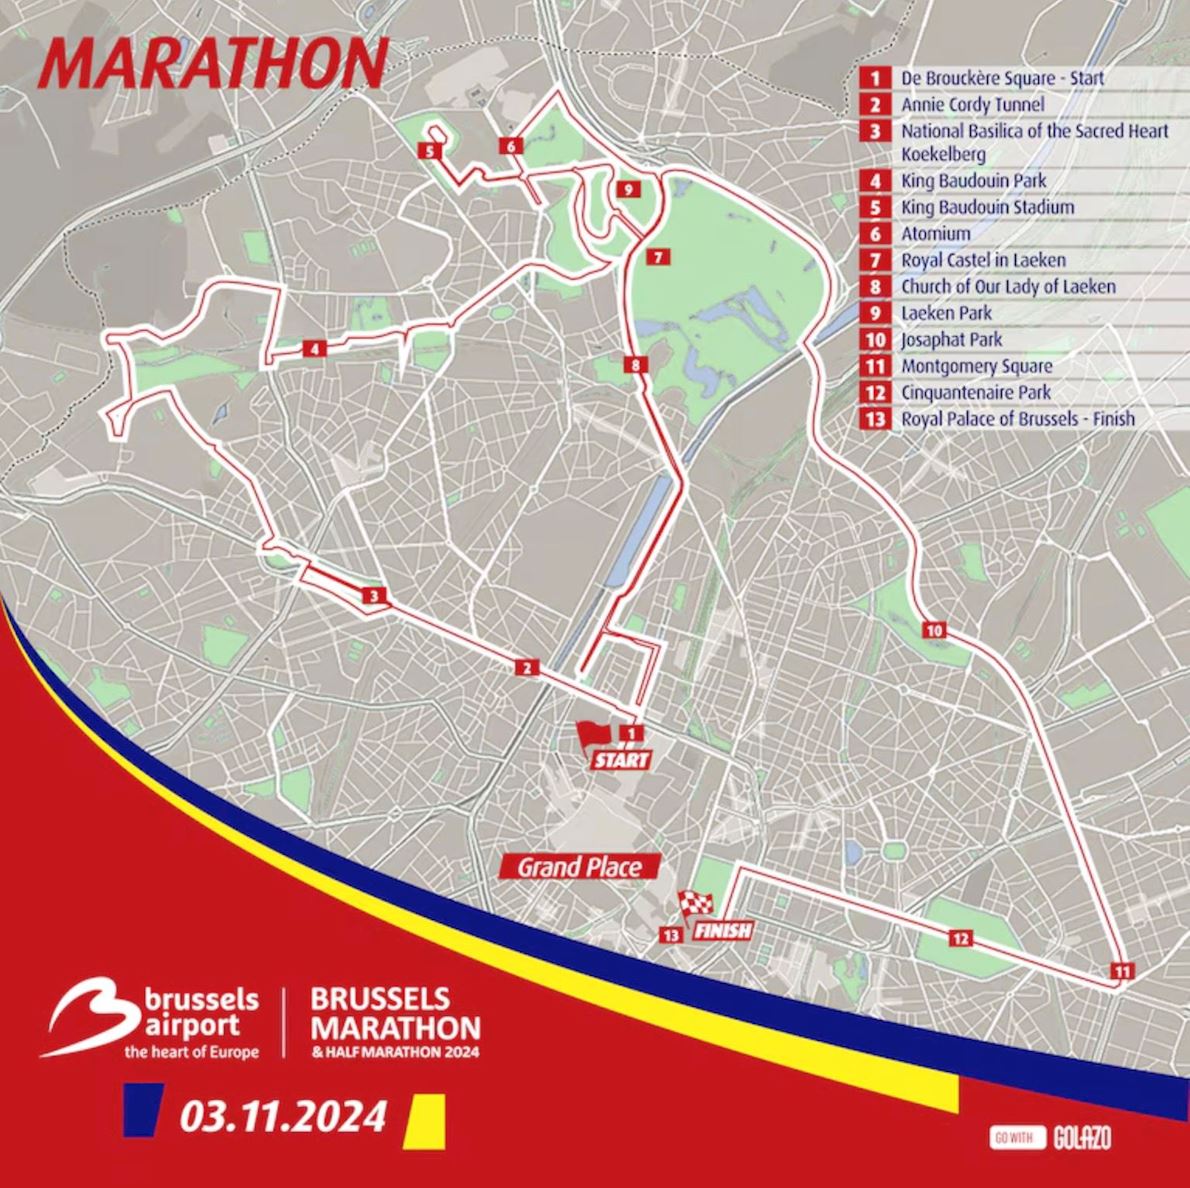 Brussels Airport Brussels Marathon & Half Marathon ITINERAIRE